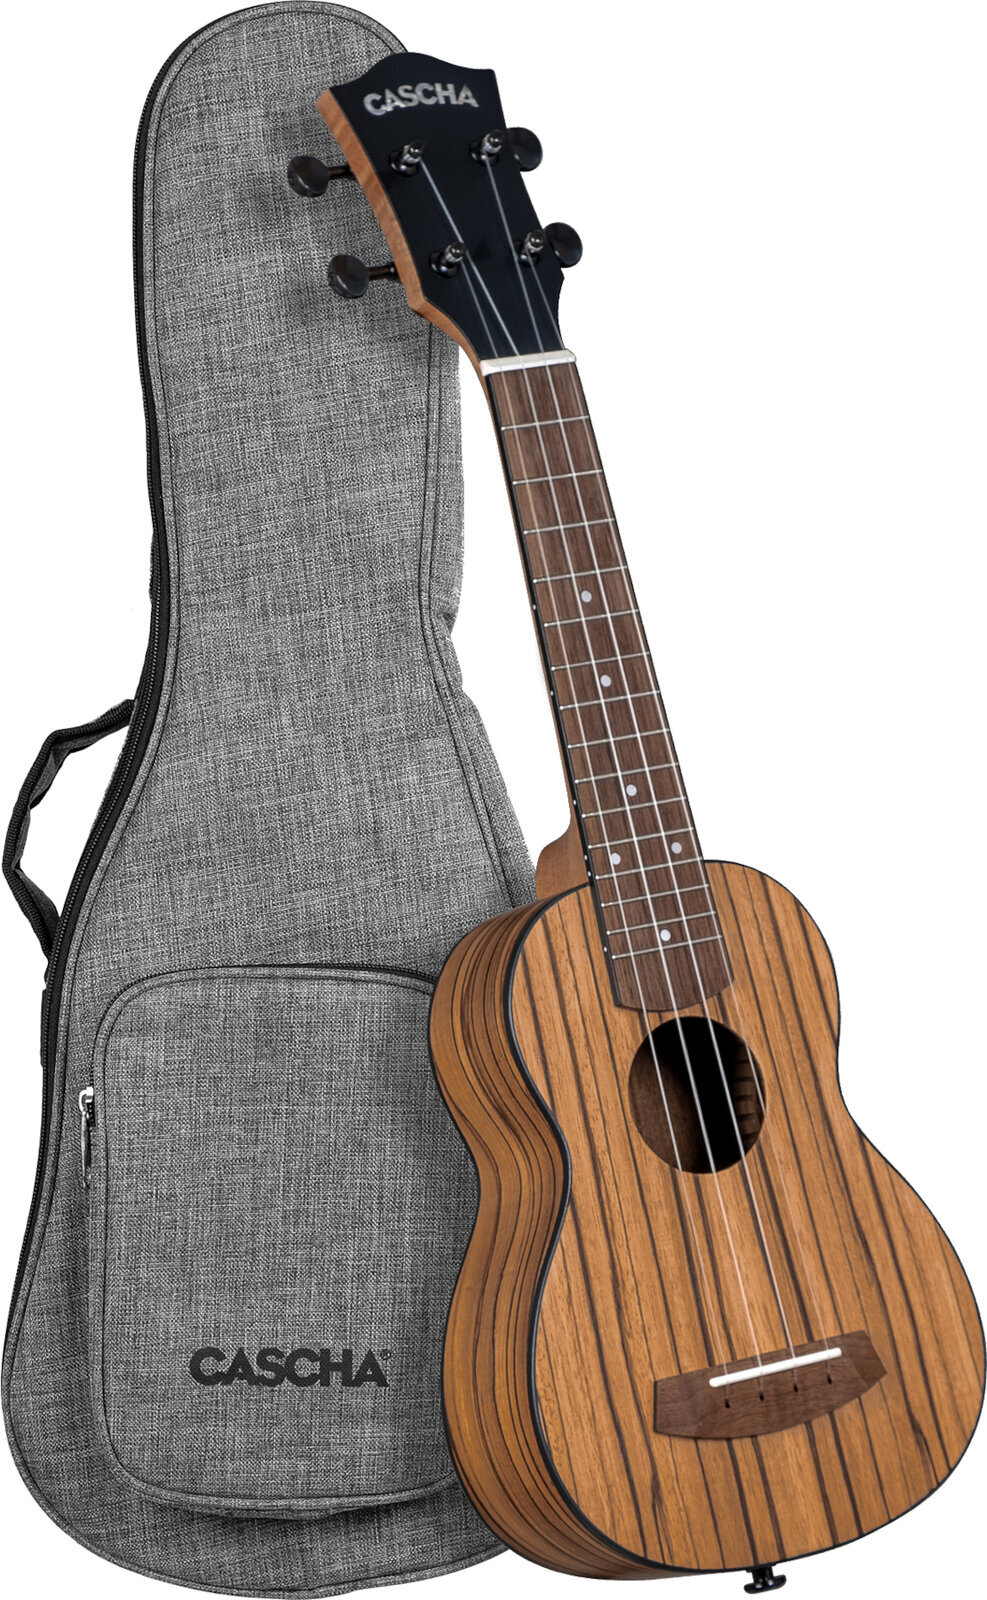 Soprano ukulele Cascha Soprano Ukulele Zebra Wood Soprano ukulele Natural